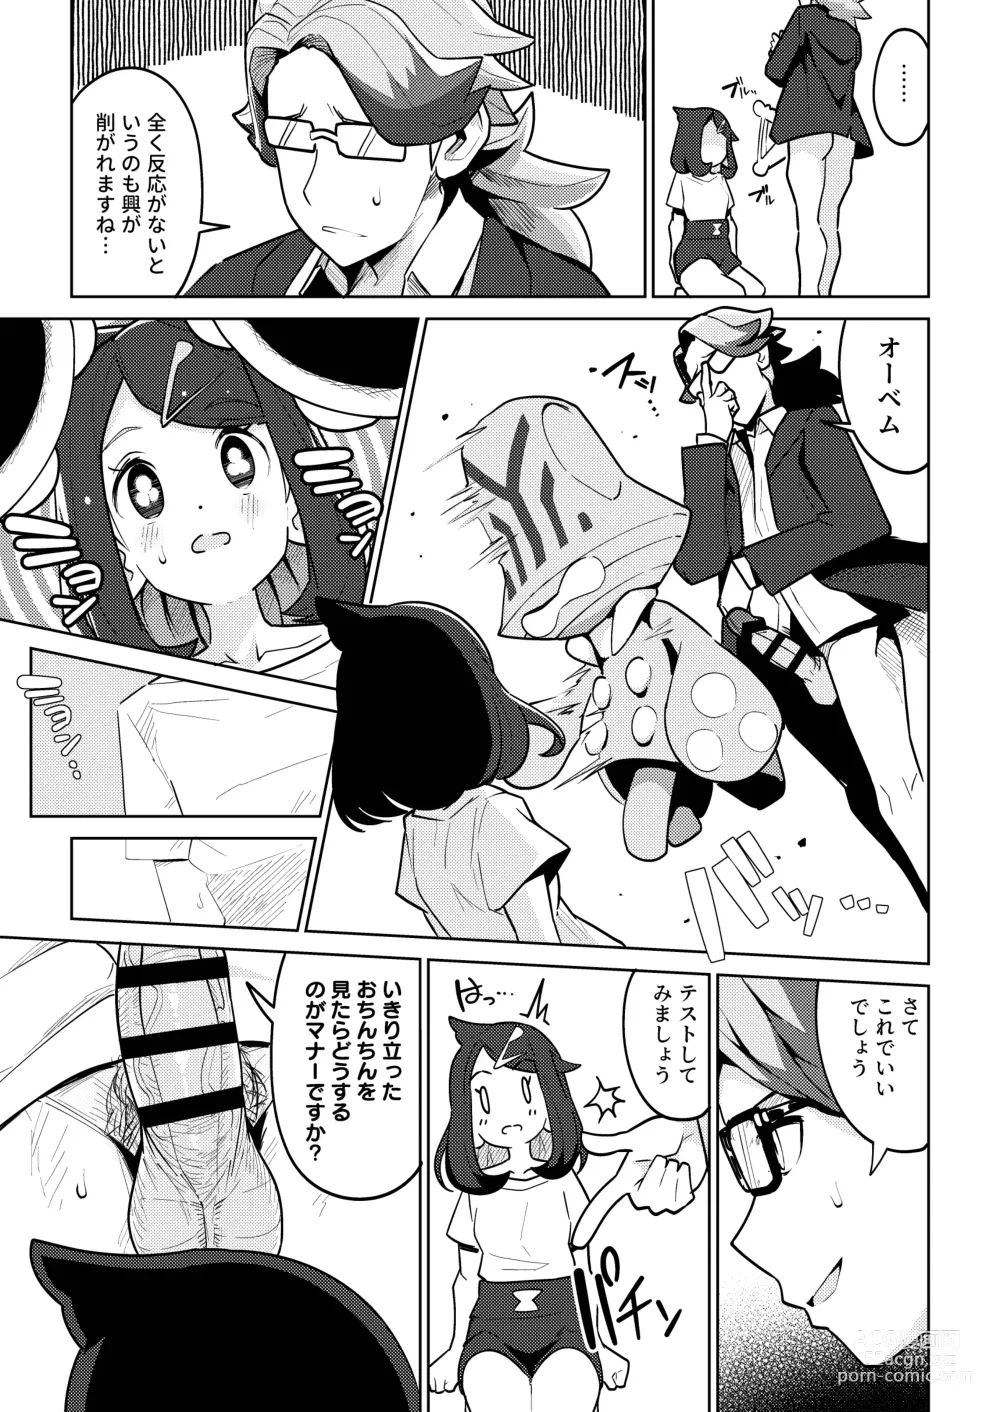 Page 7 of doujinshi Psycho Power tte Nan desu ka?